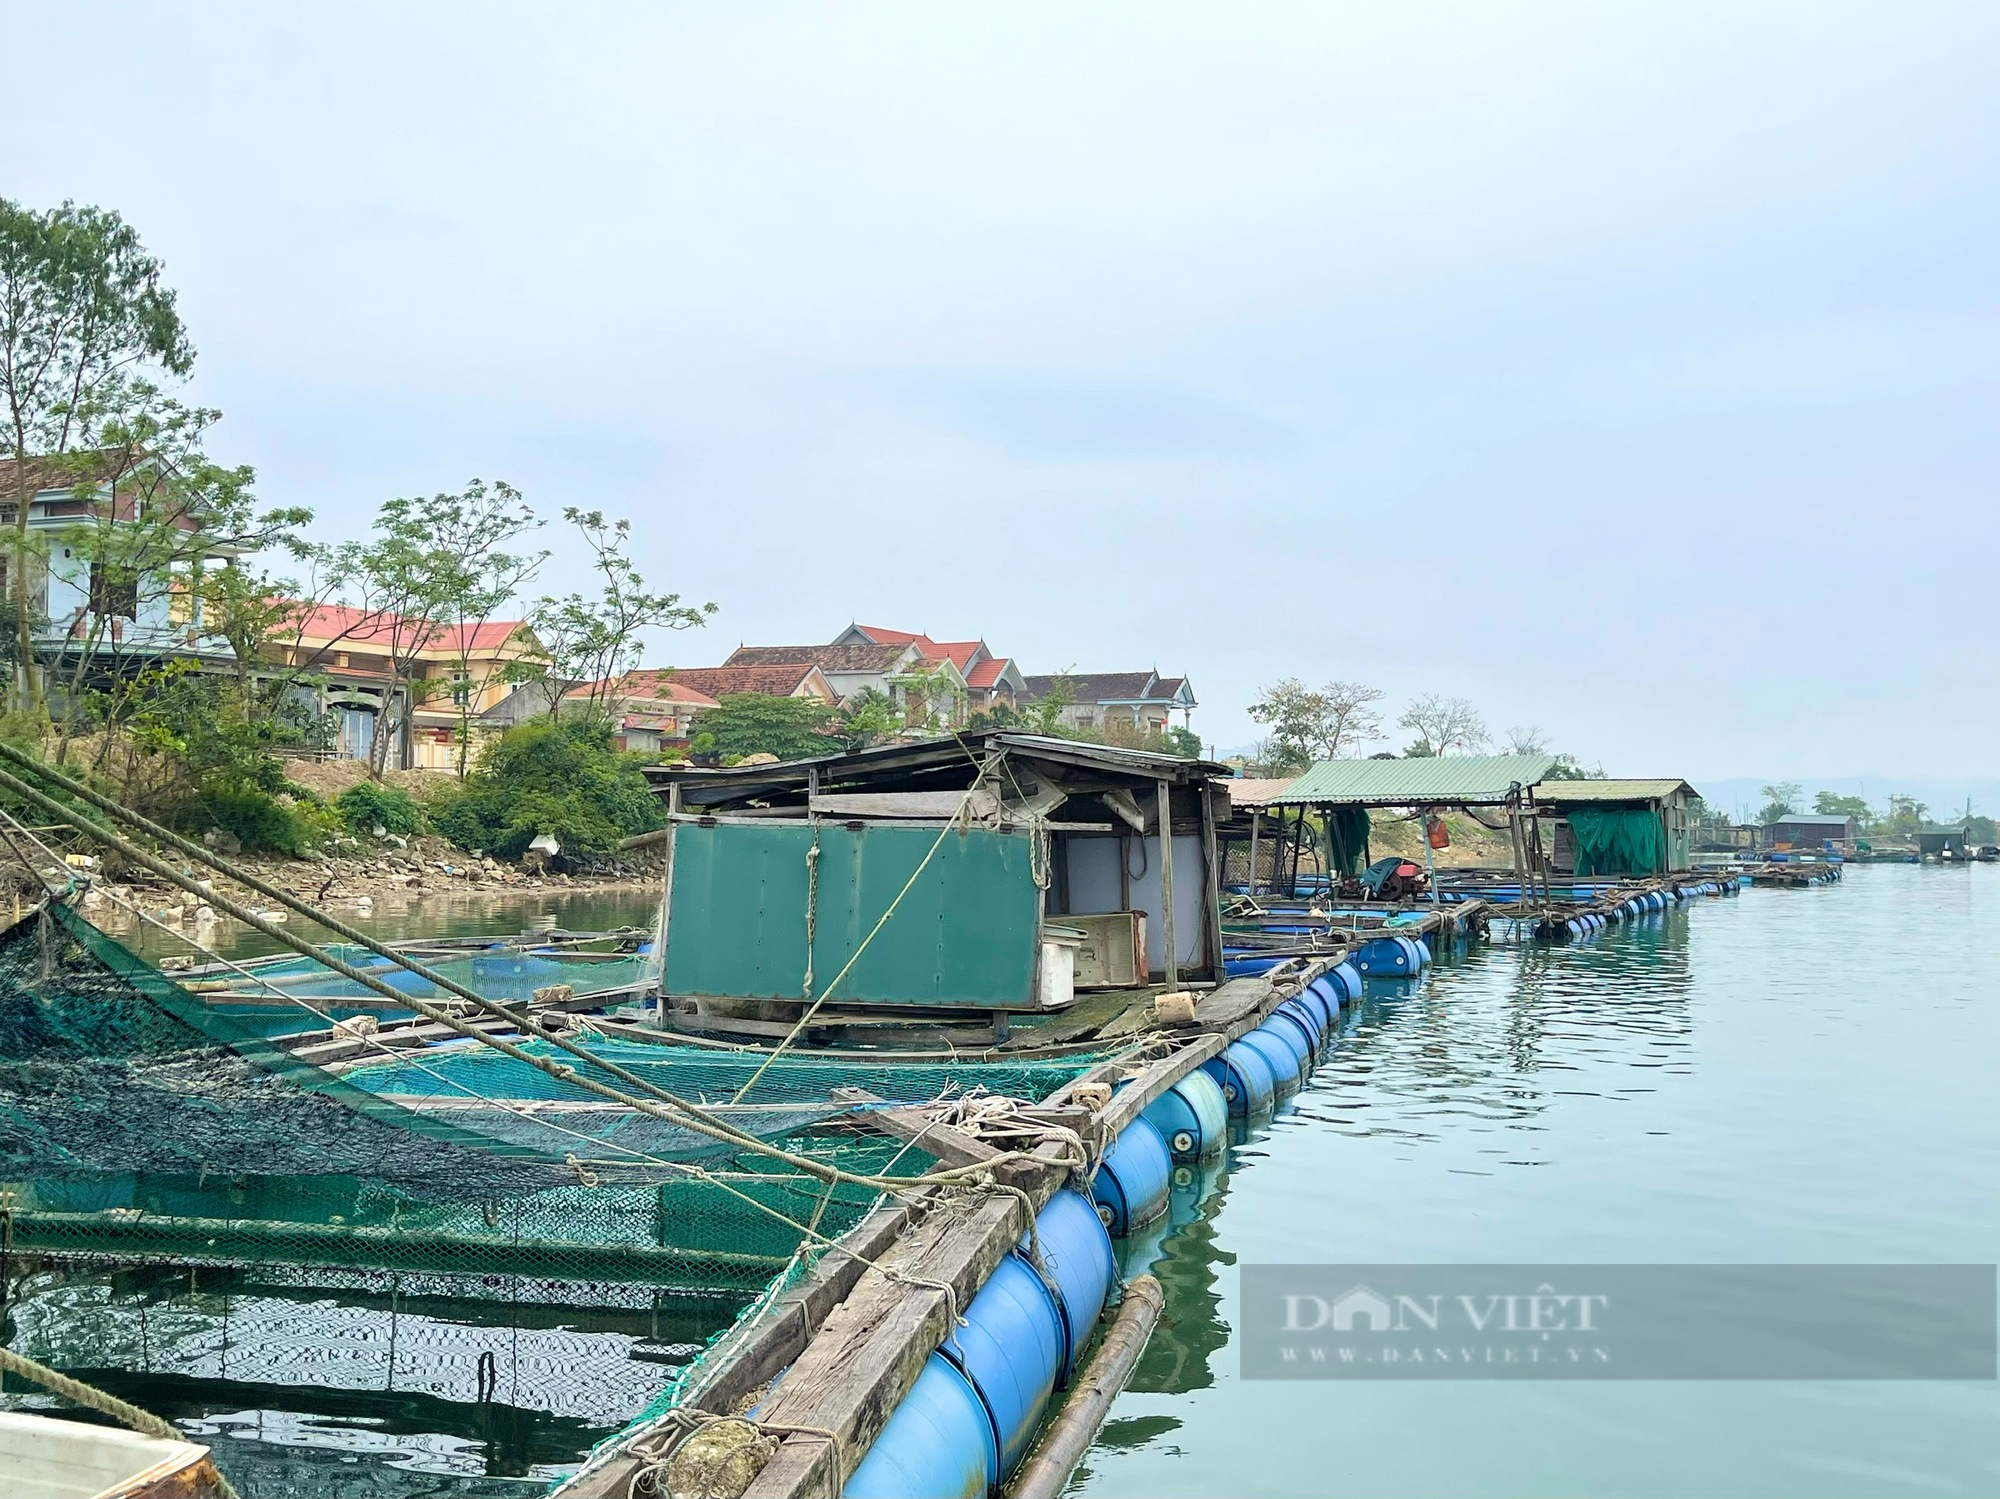 Quảng Bình: Làng nghèo nằm giữa sông Gianh sống khá nhờ nuôi cá lồng - Ảnh 6.